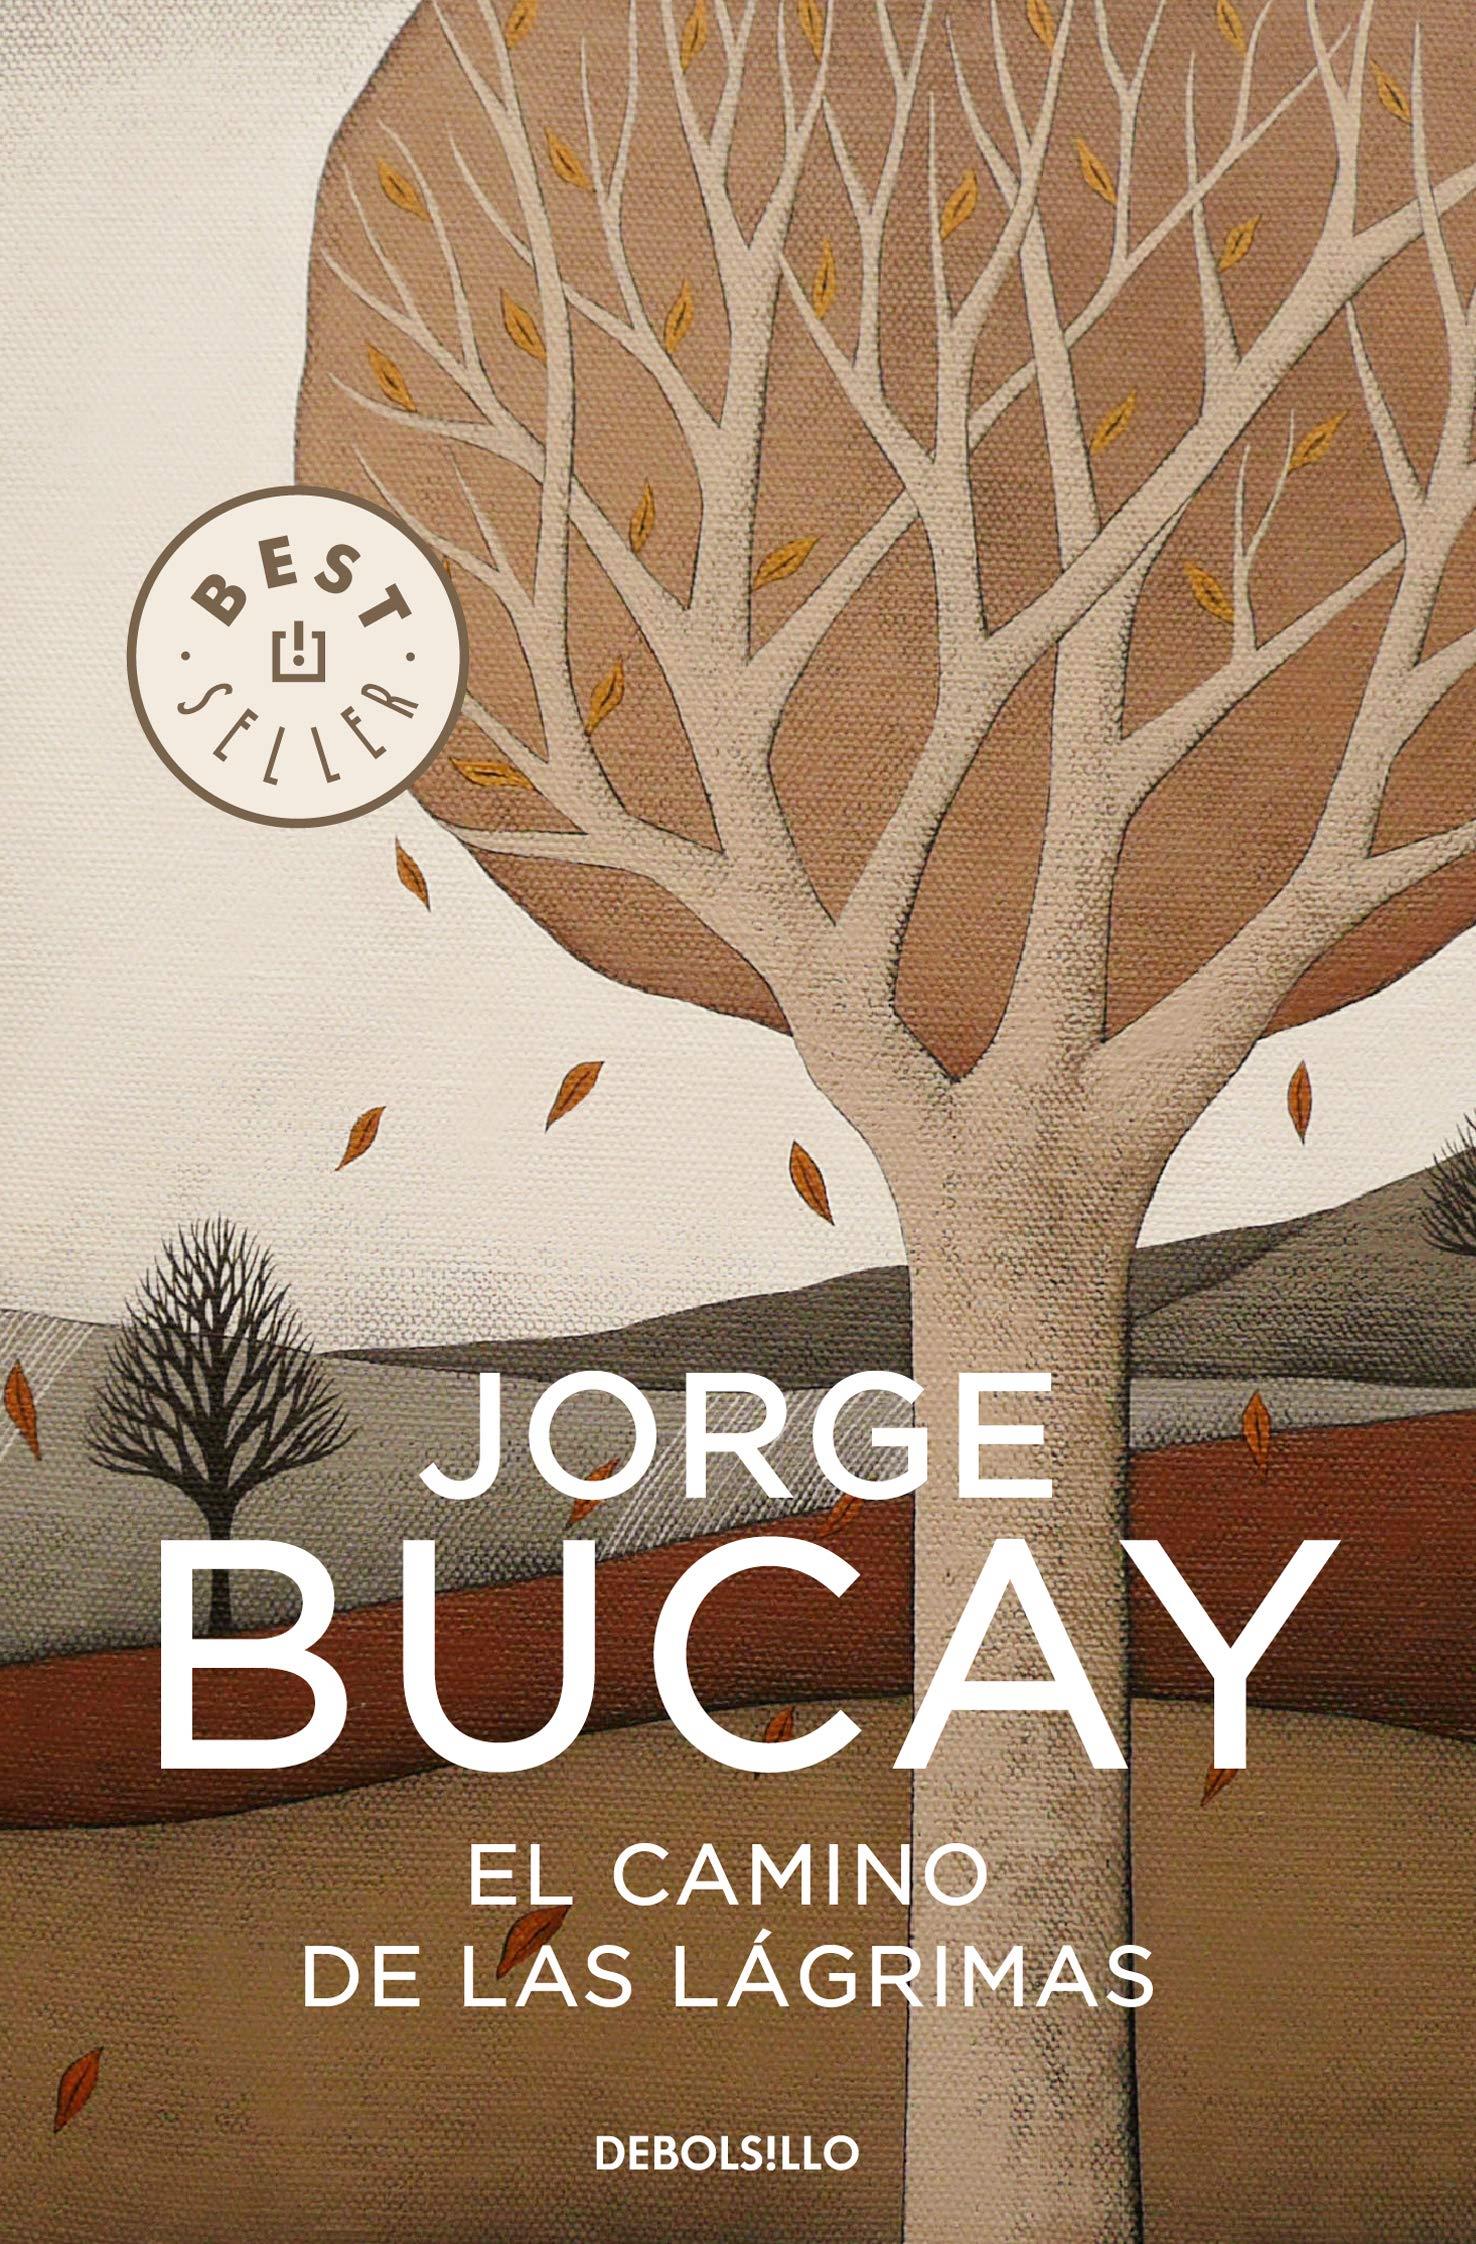 Publisher Debolsillo - El camino de las lagrimas - Jorge Bucay